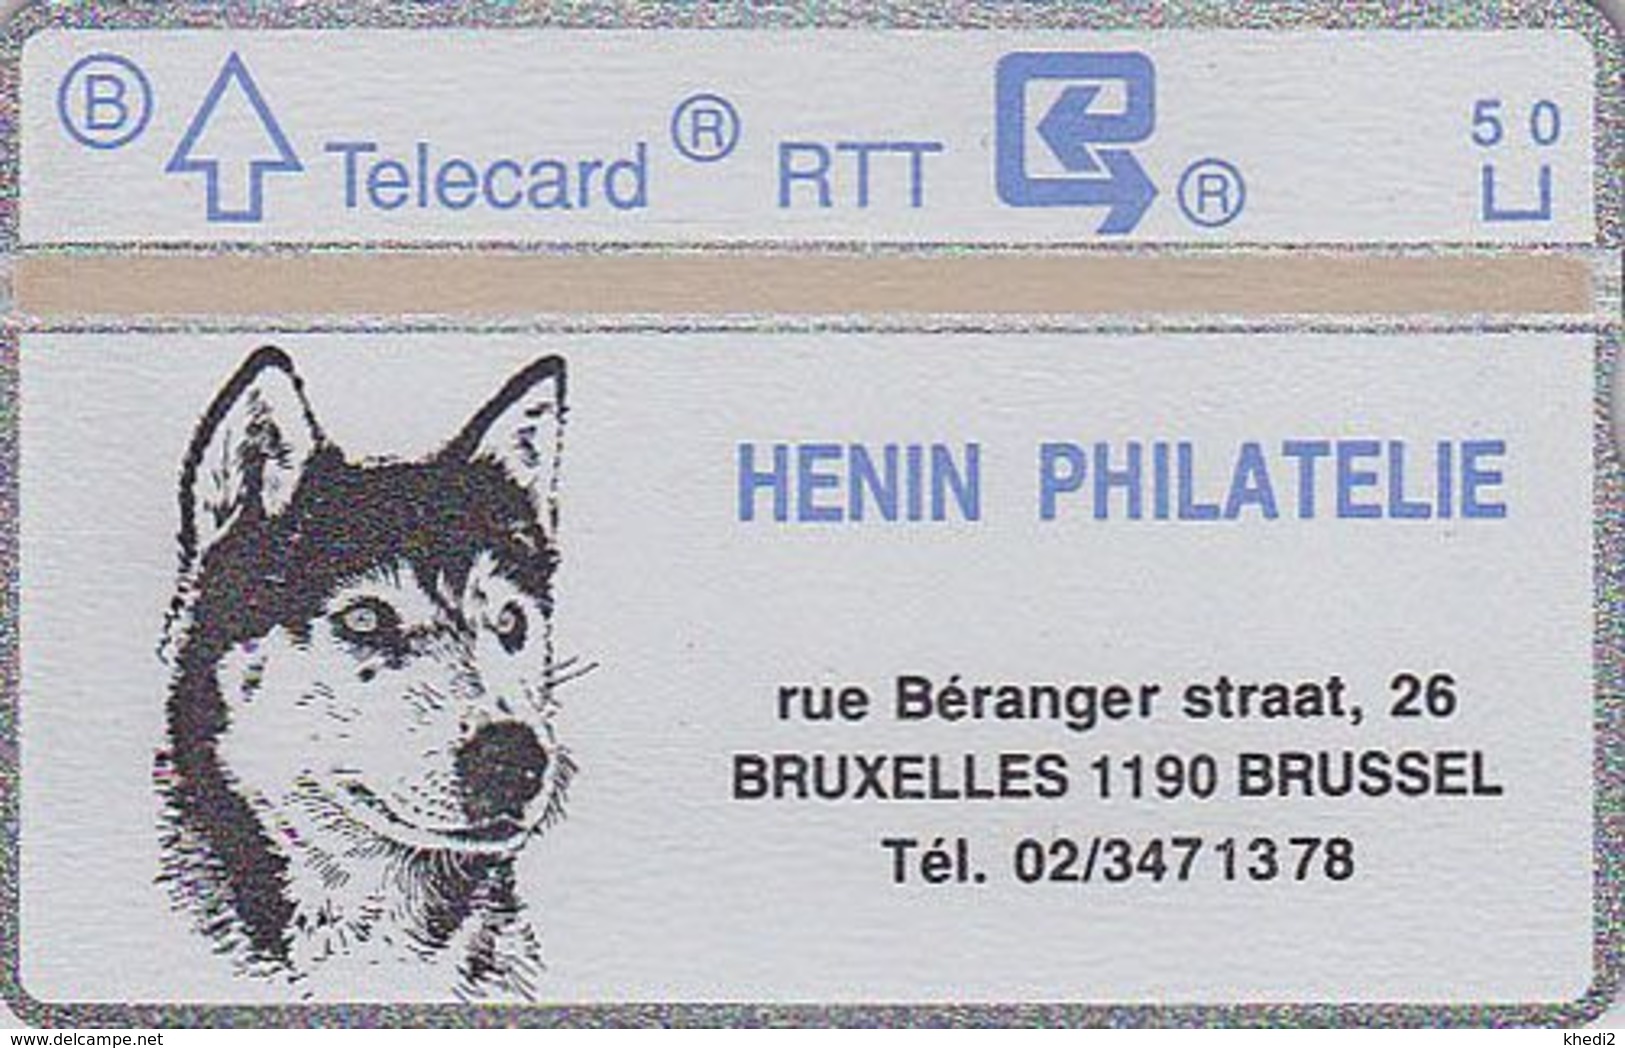 Télécarte Privée De Belgique LG L&G NEUVE - ANIMAL - CHIEN HUSKY  - DOG MINT Phonecard - HUND Telefonkarte - 588 - Sans Puce